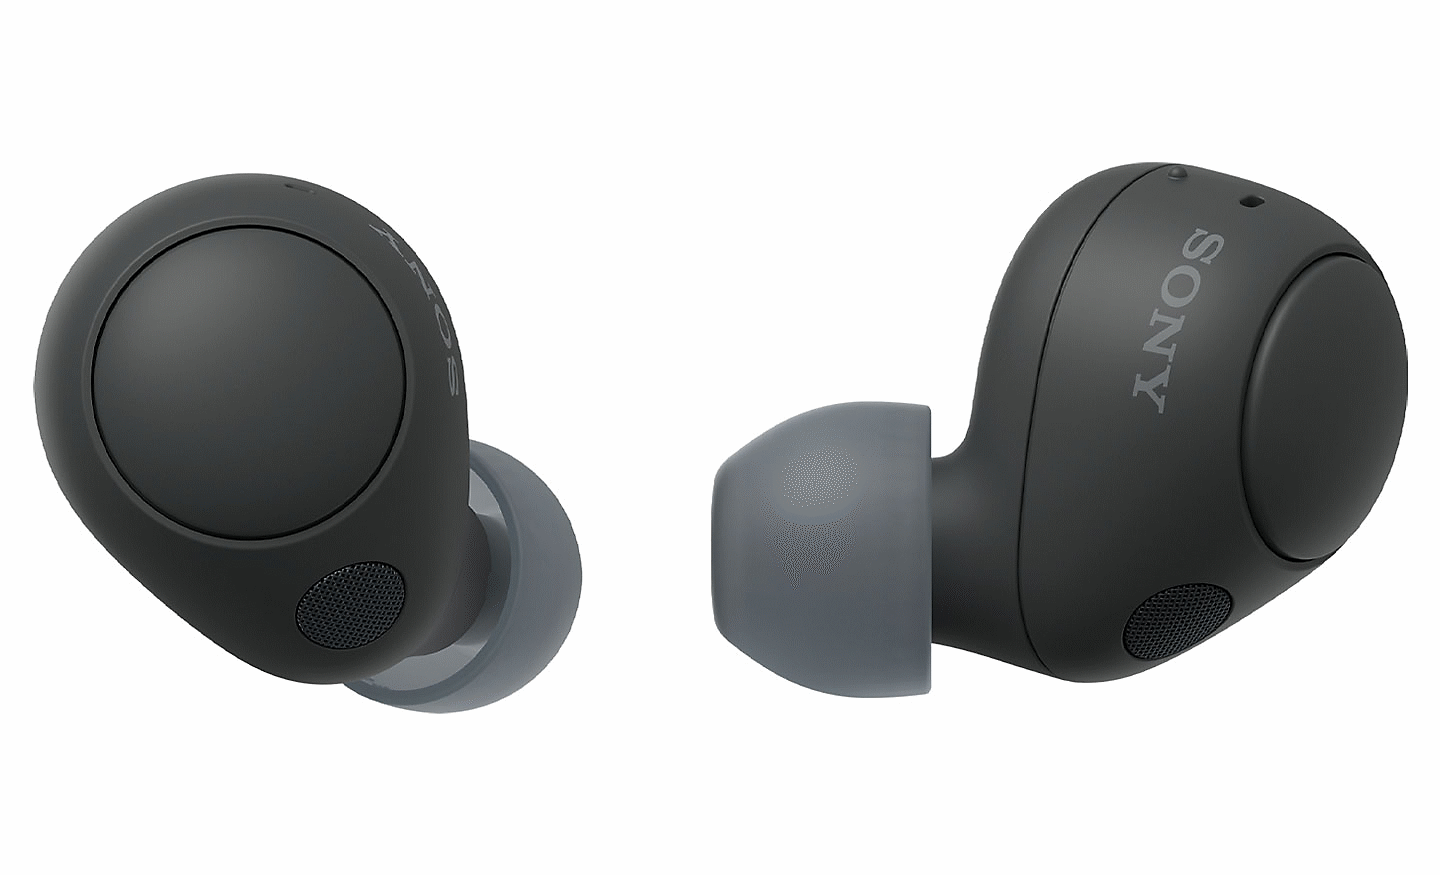 Gambar close up headphone WF-C700N warna hitam. Satu earbud yang difoto dari belakang dan yang lainnya difoto dari samping